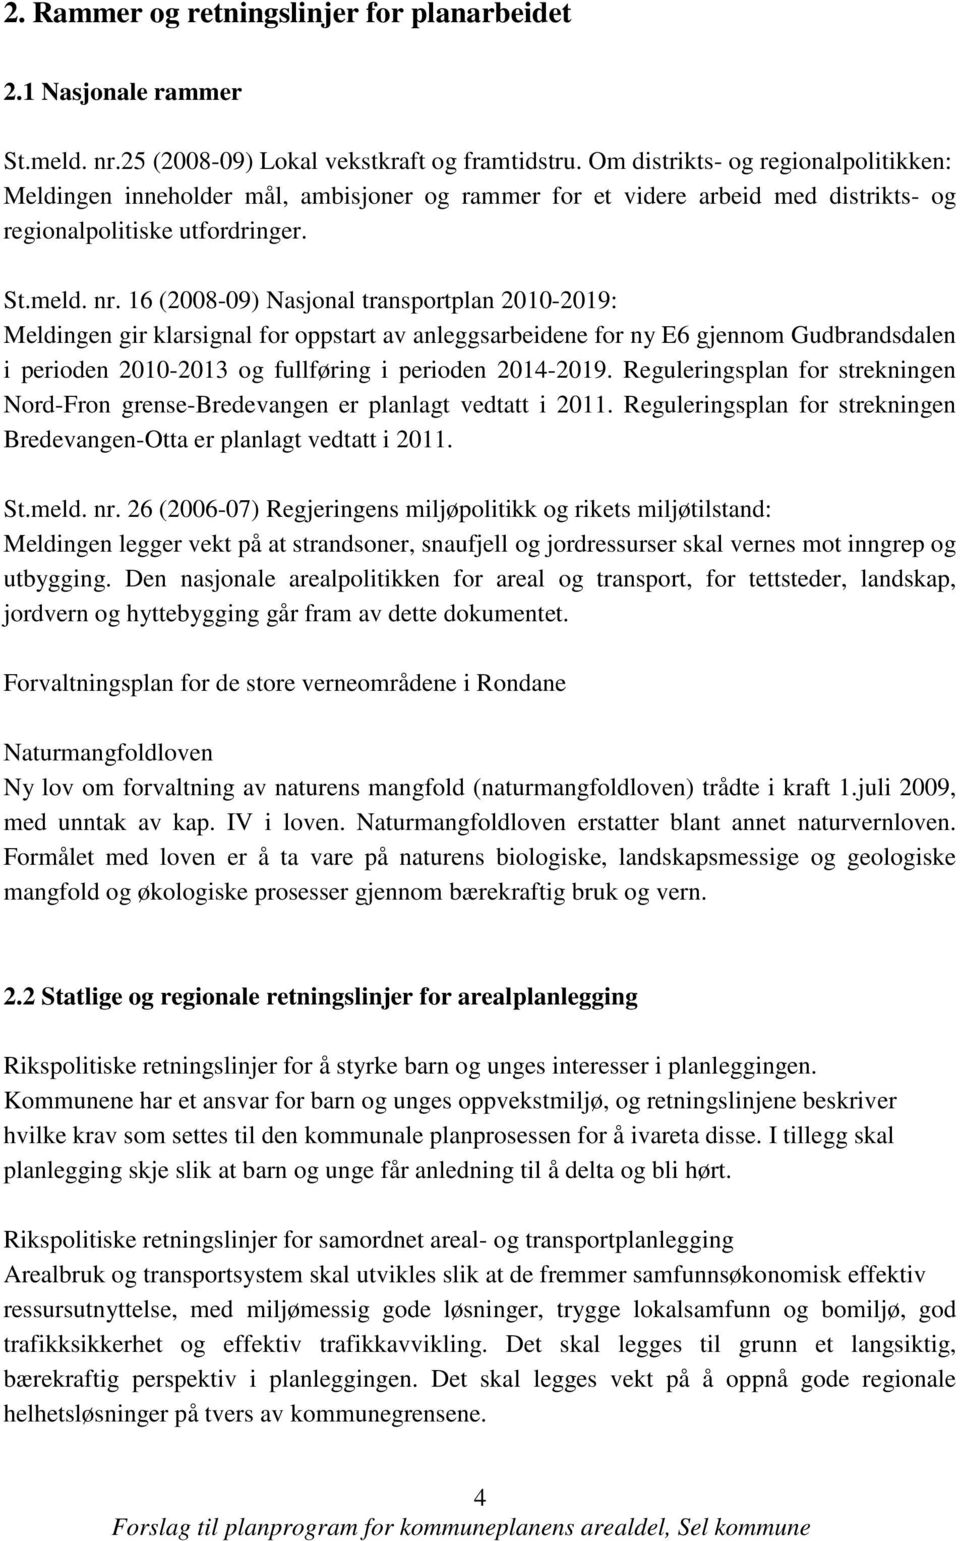 16 (2008-09) Nasjonal transportplan 2010-2019: Meldingen gir klarsignal for oppstart av anleggsarbeidene for ny E6 gjennom Gudbrandsdalen i perioden 2010-2013 og fullføring i perioden 2014-2019.